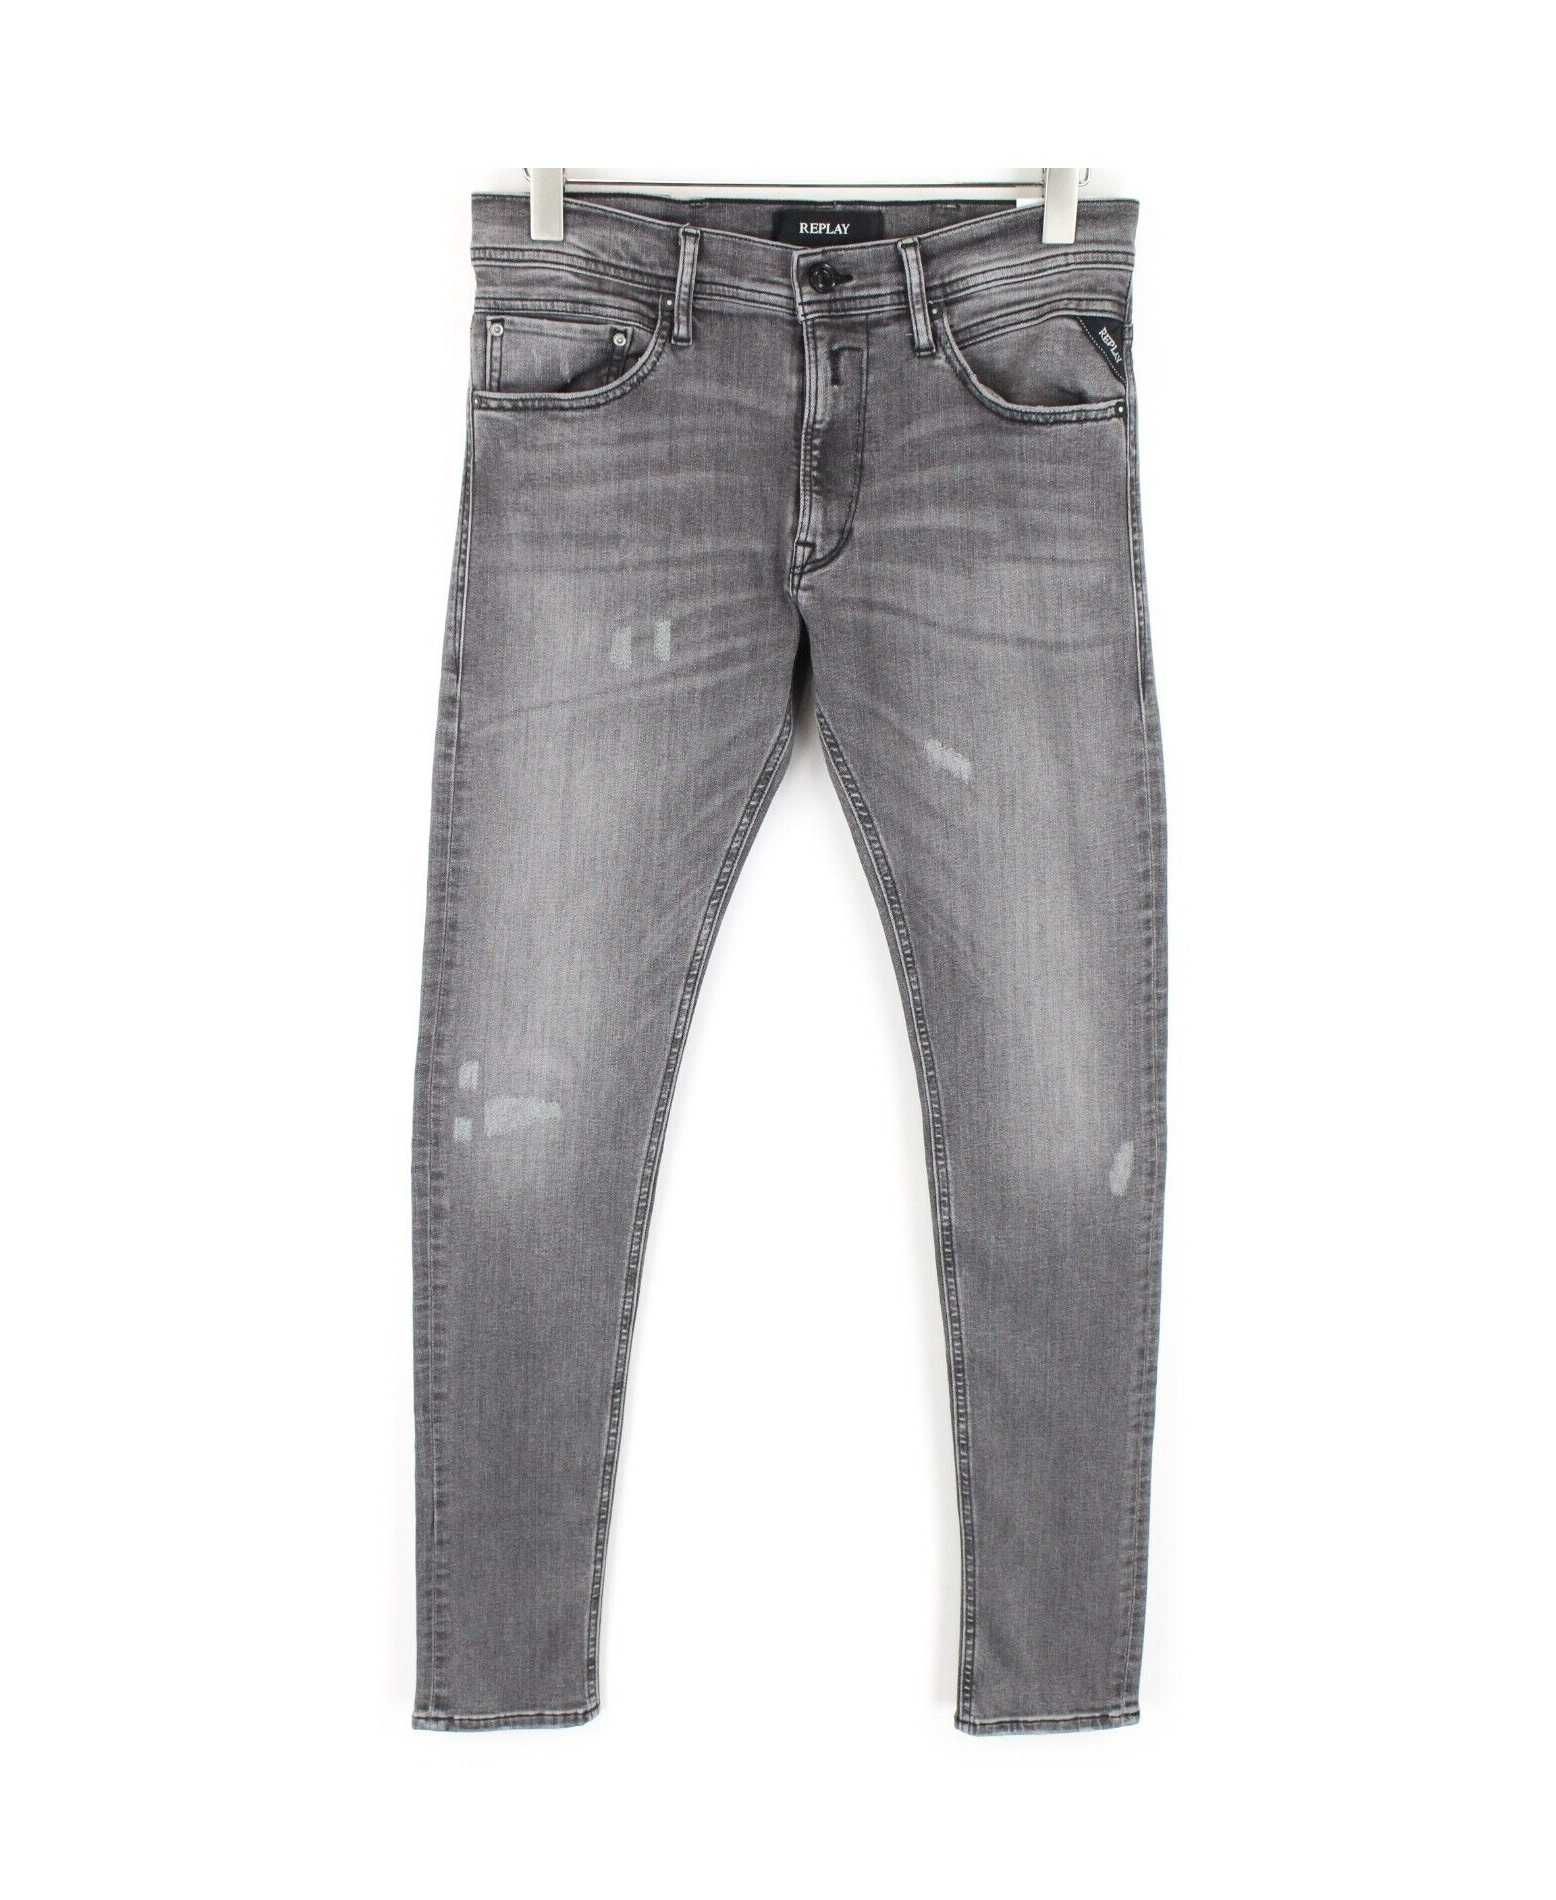 НОВИ Replay Jondrill Skinny Jeans ОРИГИНАЛНИ мъжки дънки - 30